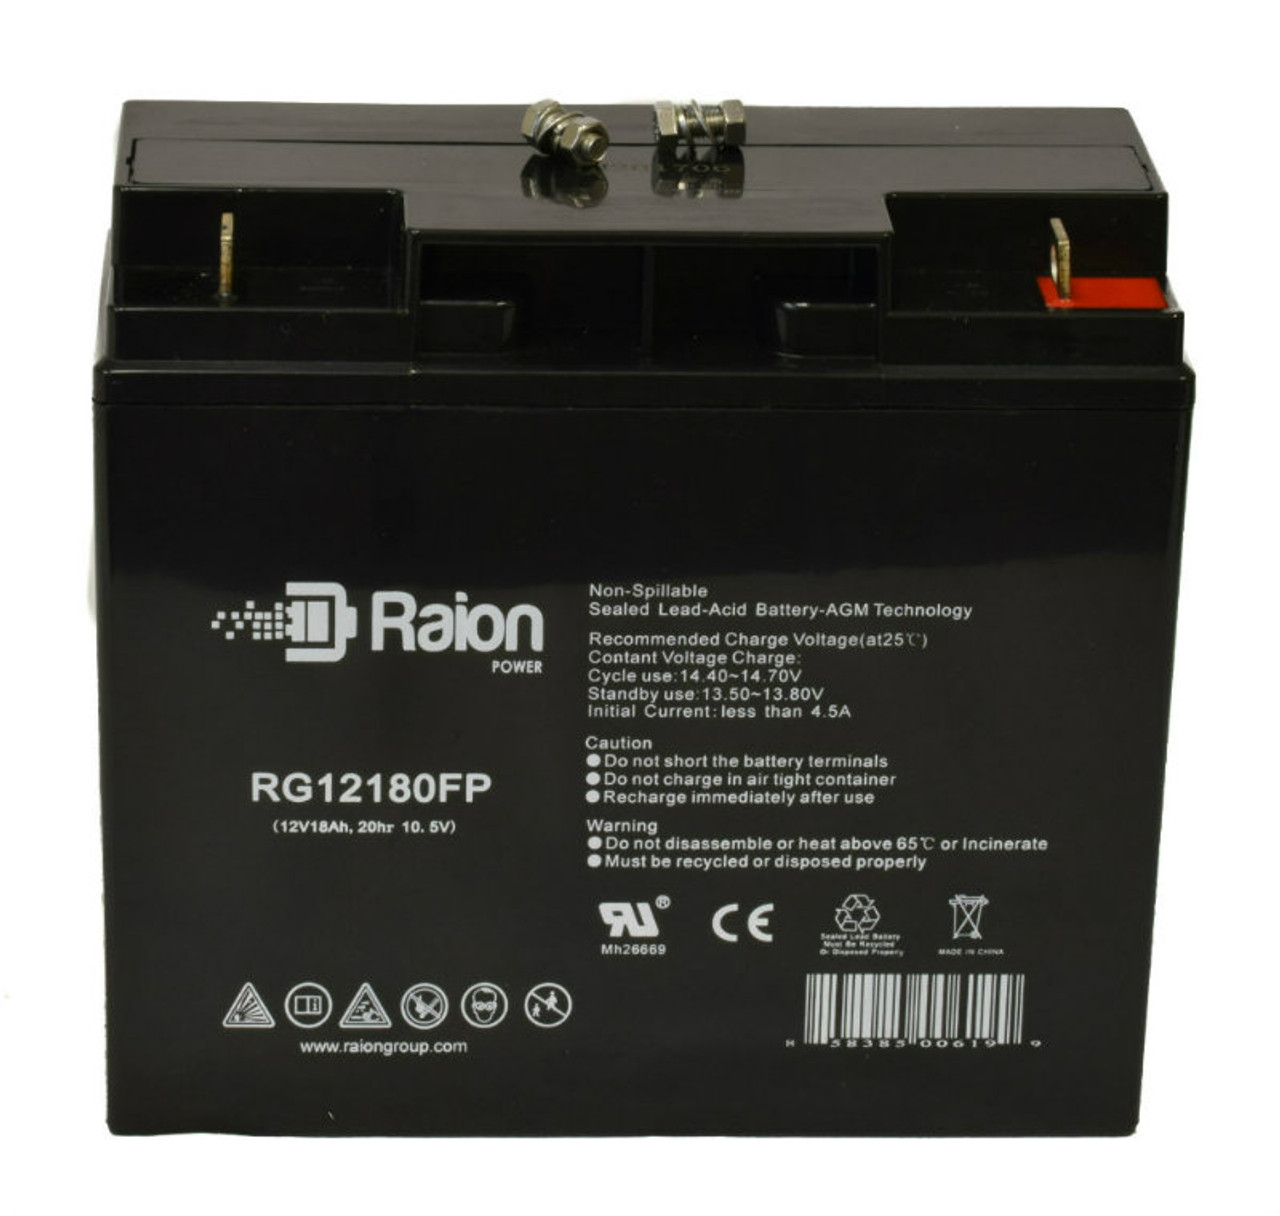 Raion Power RG12180FP 12V 18Ah Lead Acid Battery for Kinghero SJ12V15Ah